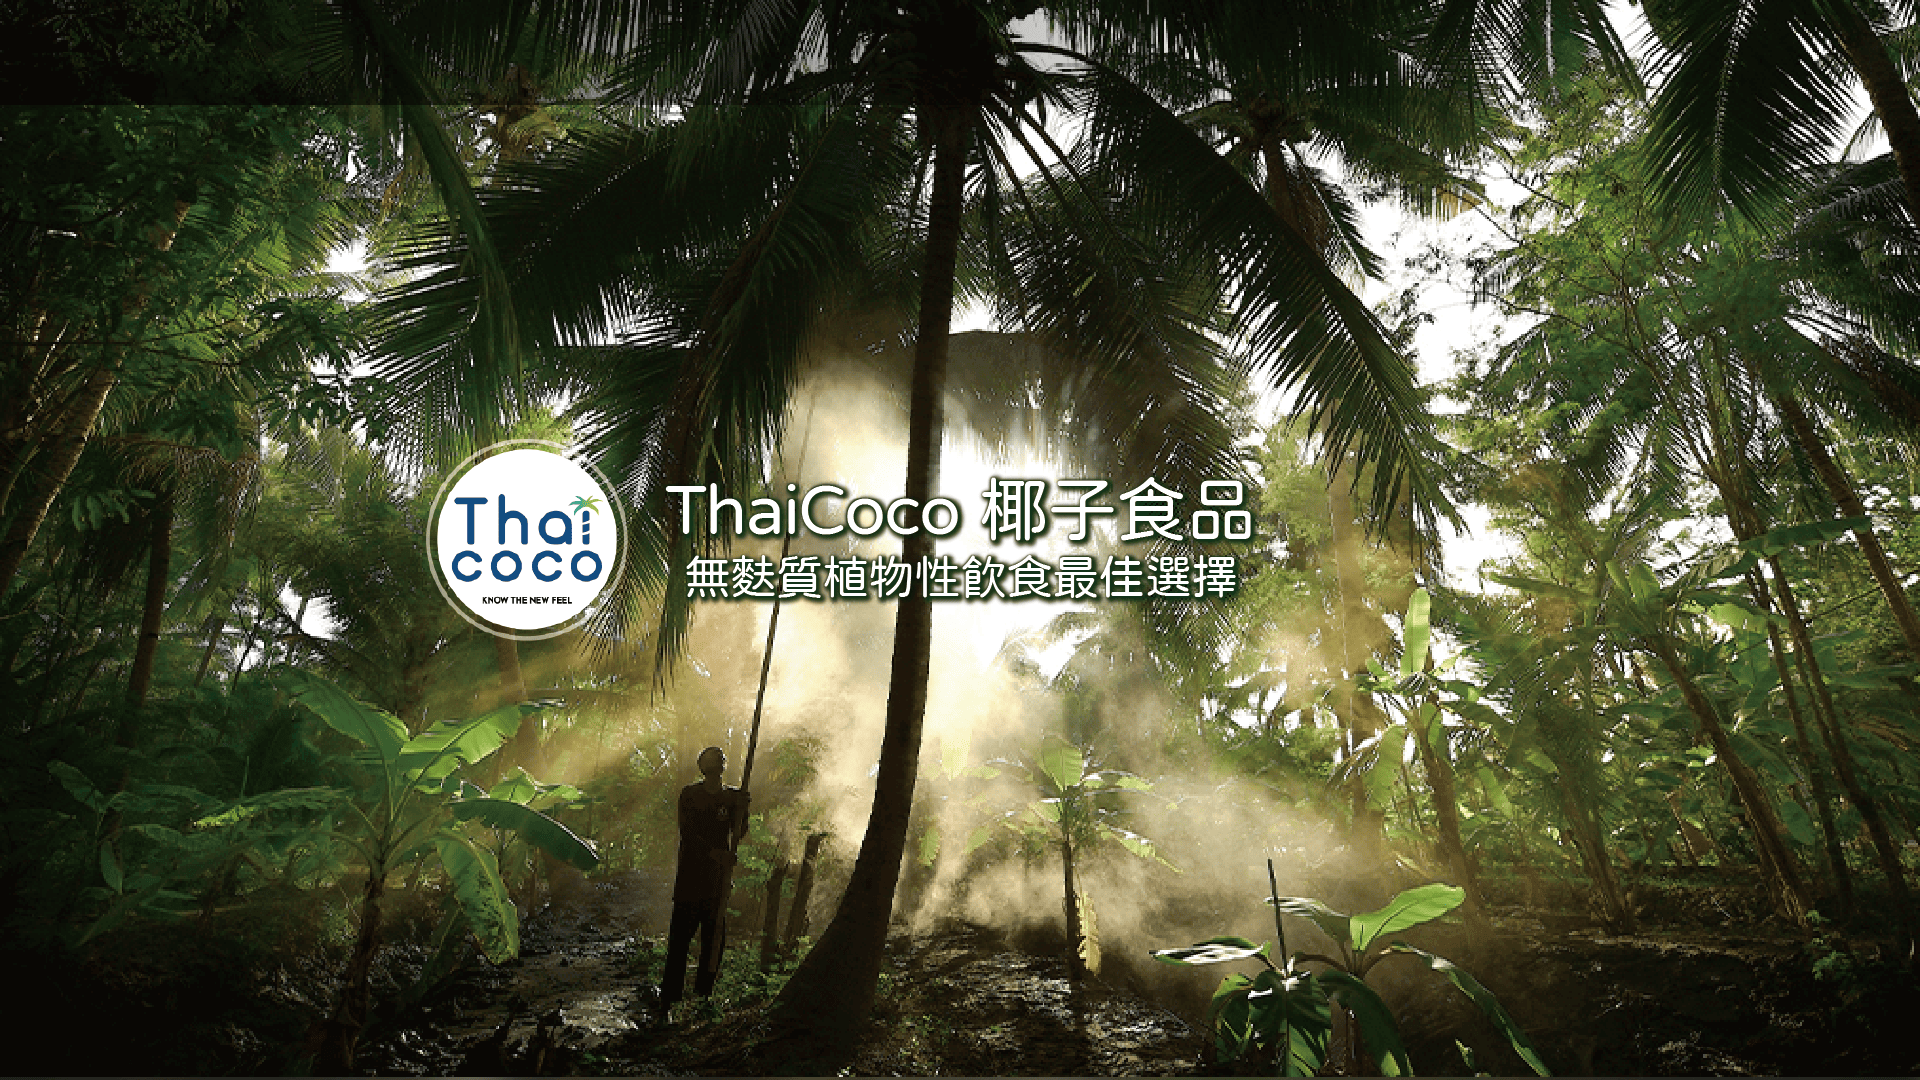 【泰國】泰國最大椰子食品品牌—ThaiCoco，無麩質飲食、植物性飲食、蛋白質飲食的最佳選擇